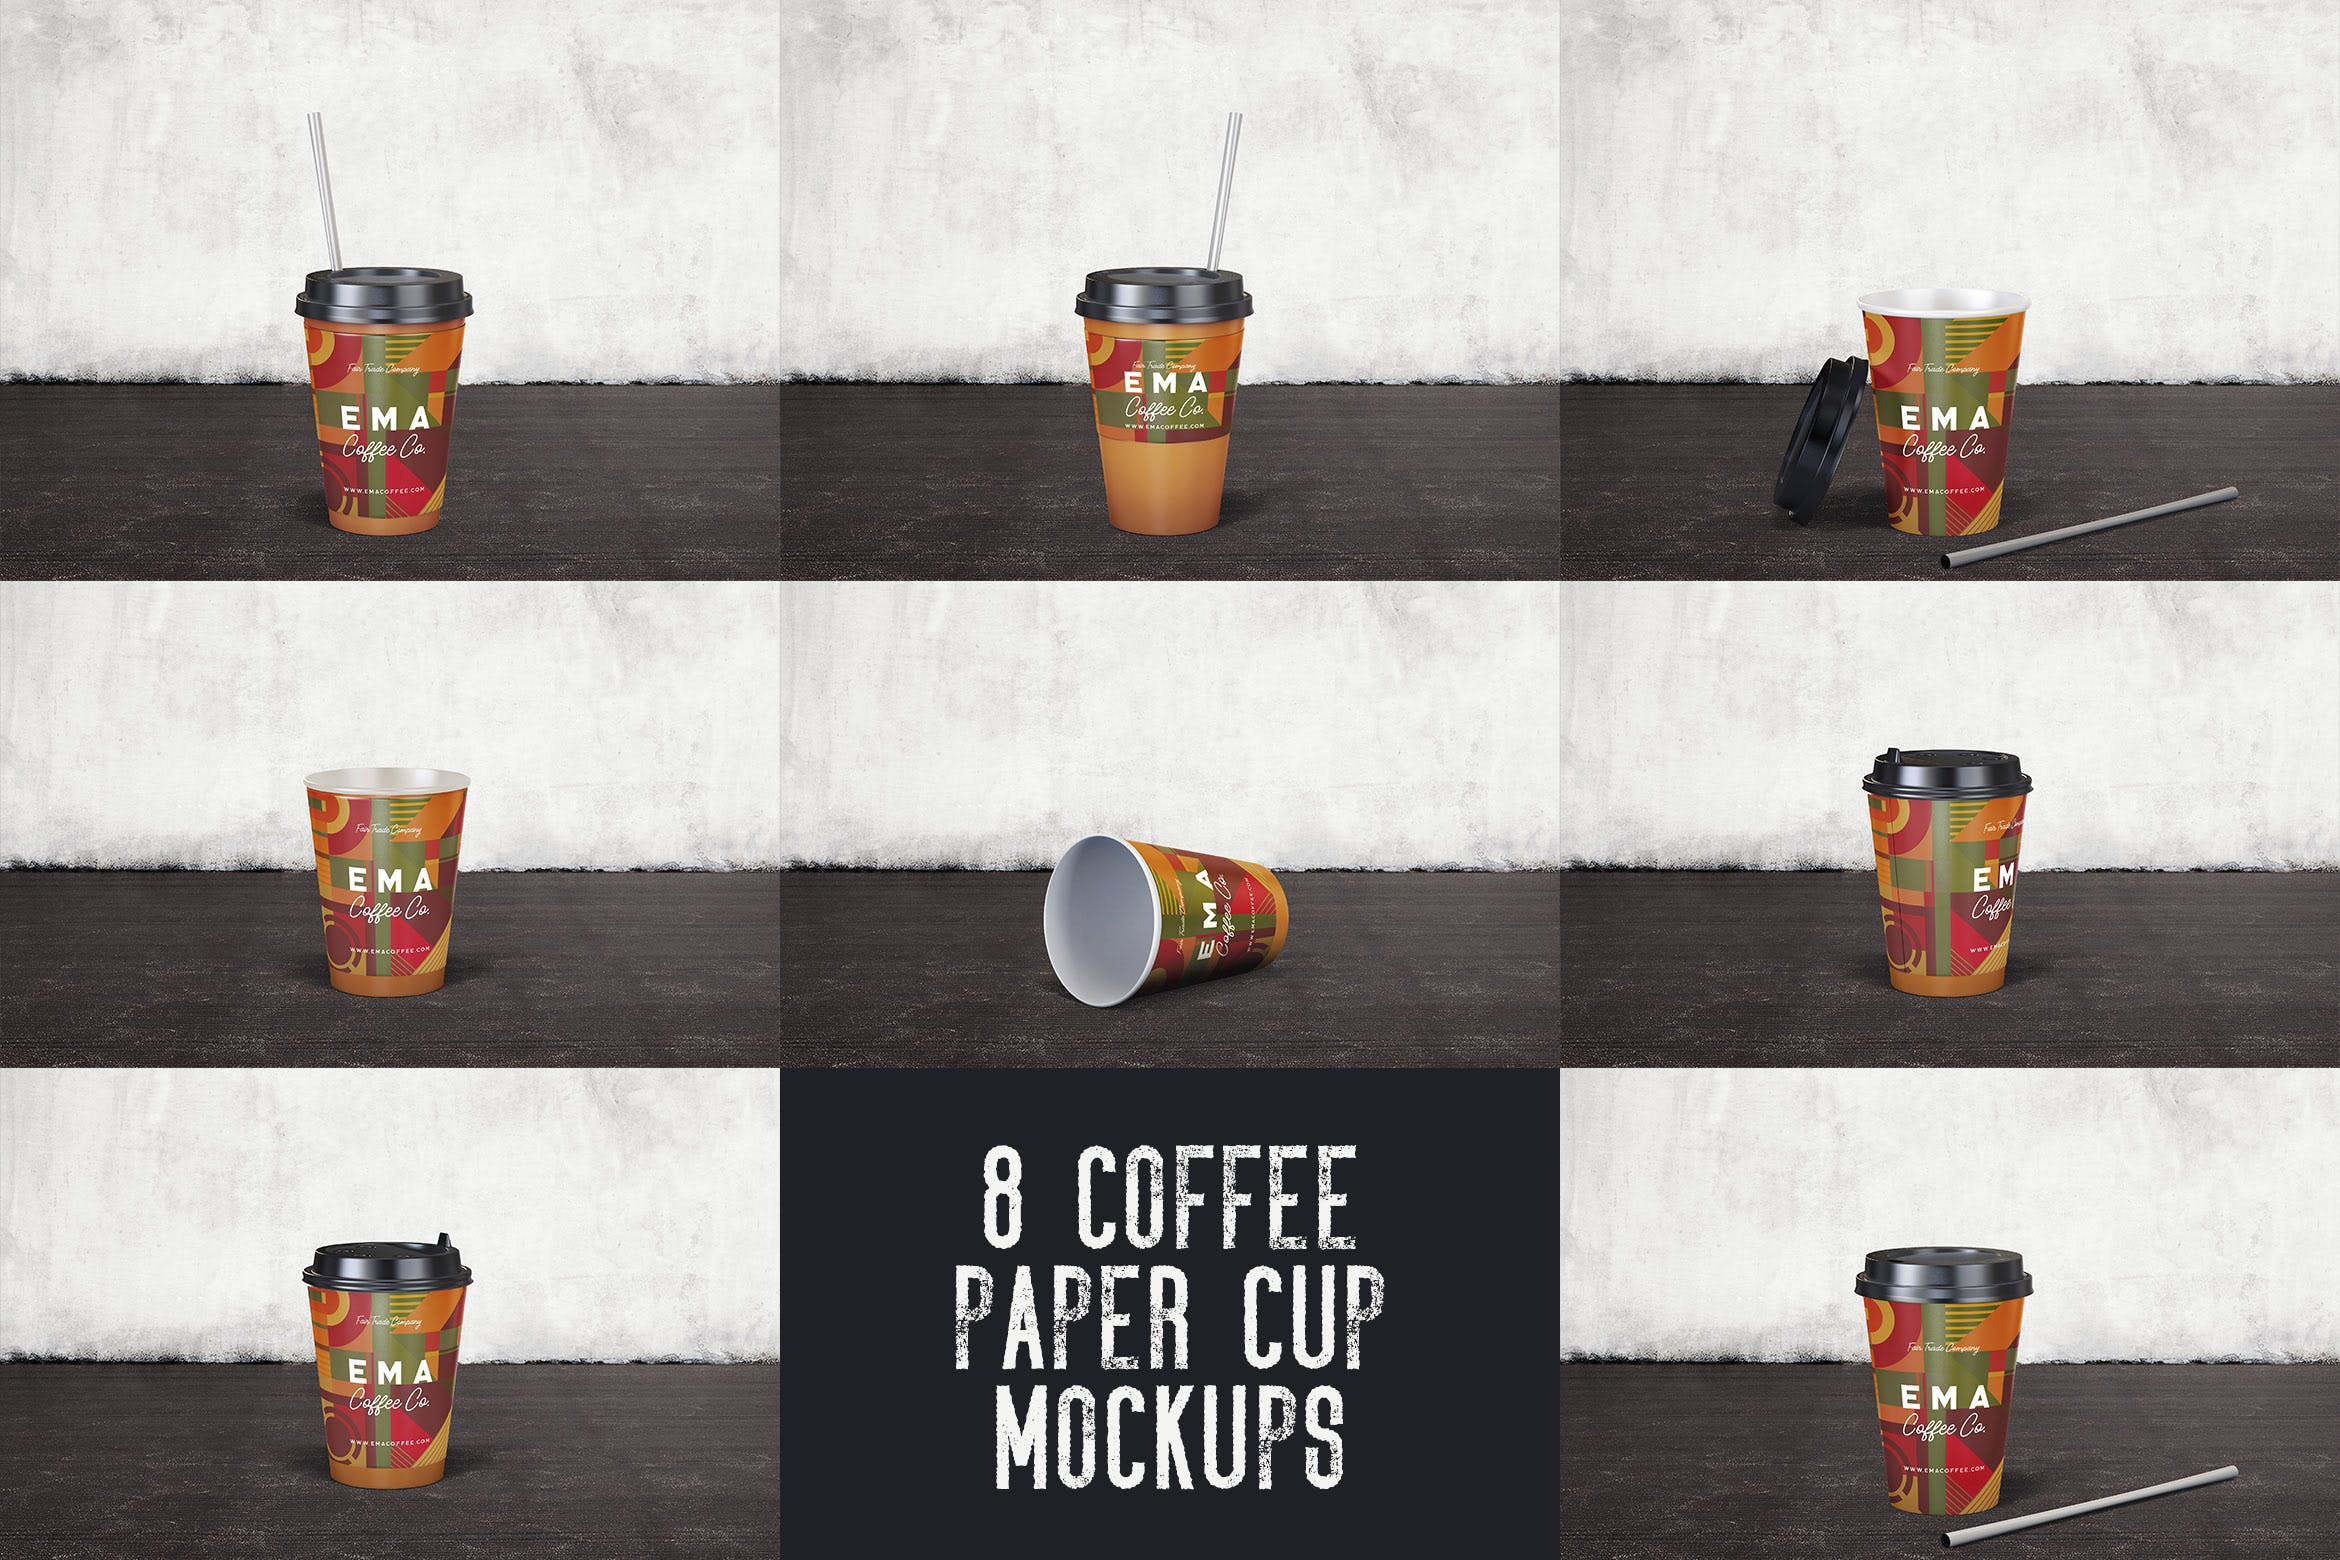 8个咖啡纸杯外观设计效果图非凡图库精选 8 Coffee Paper Cup Mockups插图